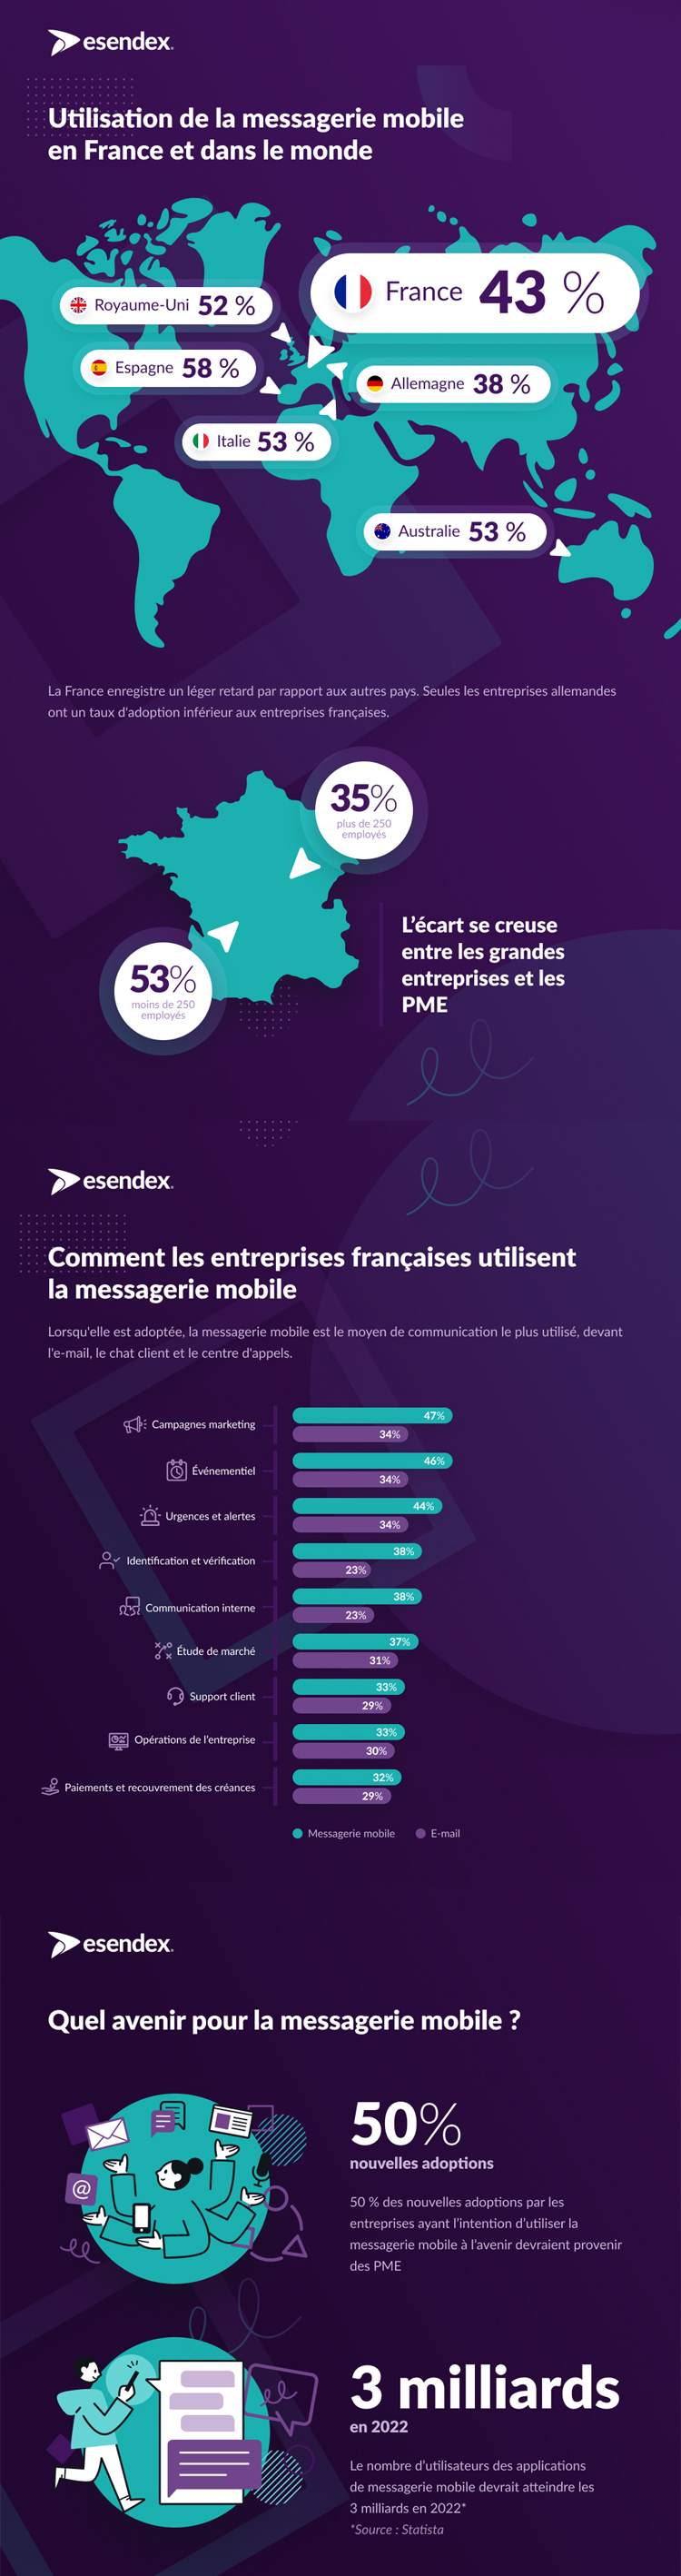 Quelle est la place pour la messagerie mobile en France dans les entreprises en 2021 ?